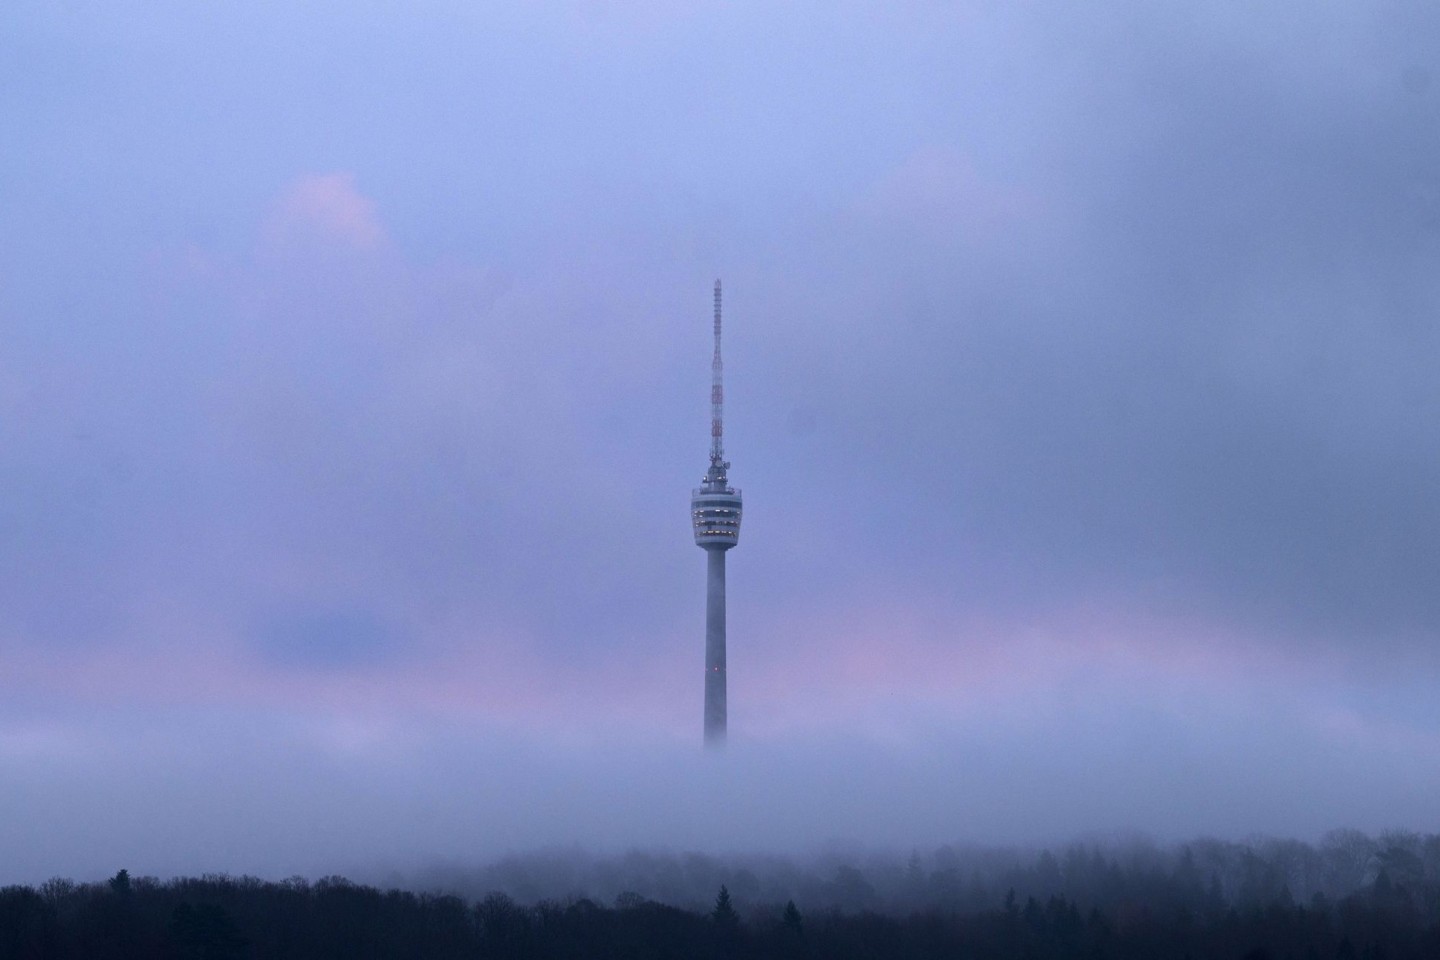 Der Stuttgarter Fernsehturm am frühen Morgen zwischen Wolken.